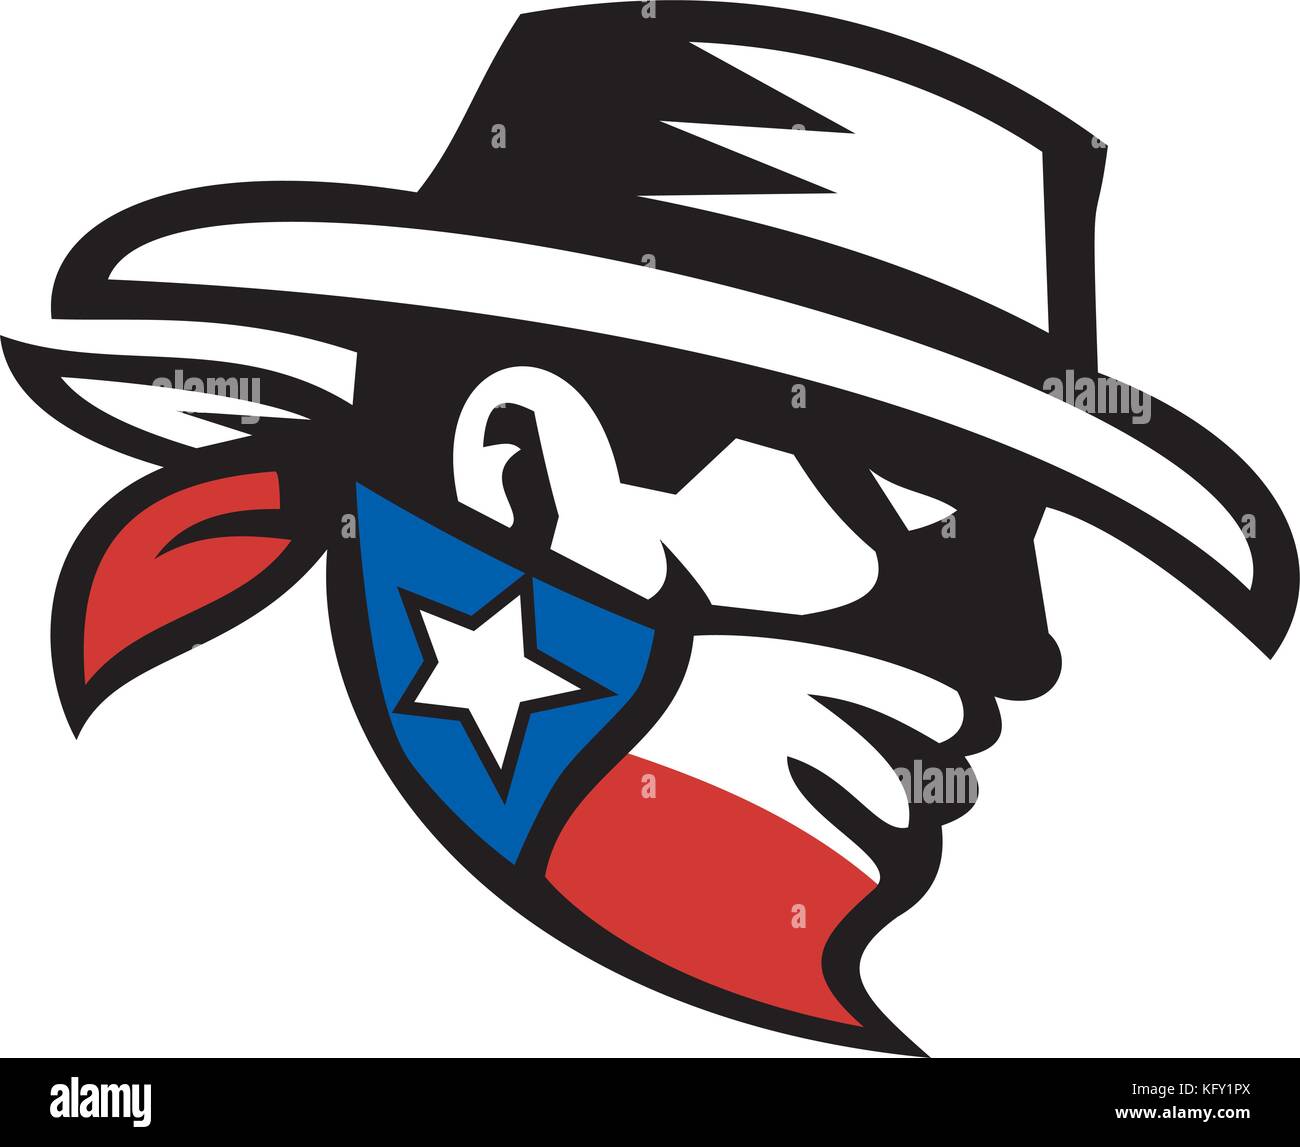 Retro Style Abbildung: Ein maskierter bandit Texas cowboy Kopf trägt ein Bandana Maske mit Texas Lone Star State Flag auf Hintergrund isolieren. Stock Vektor